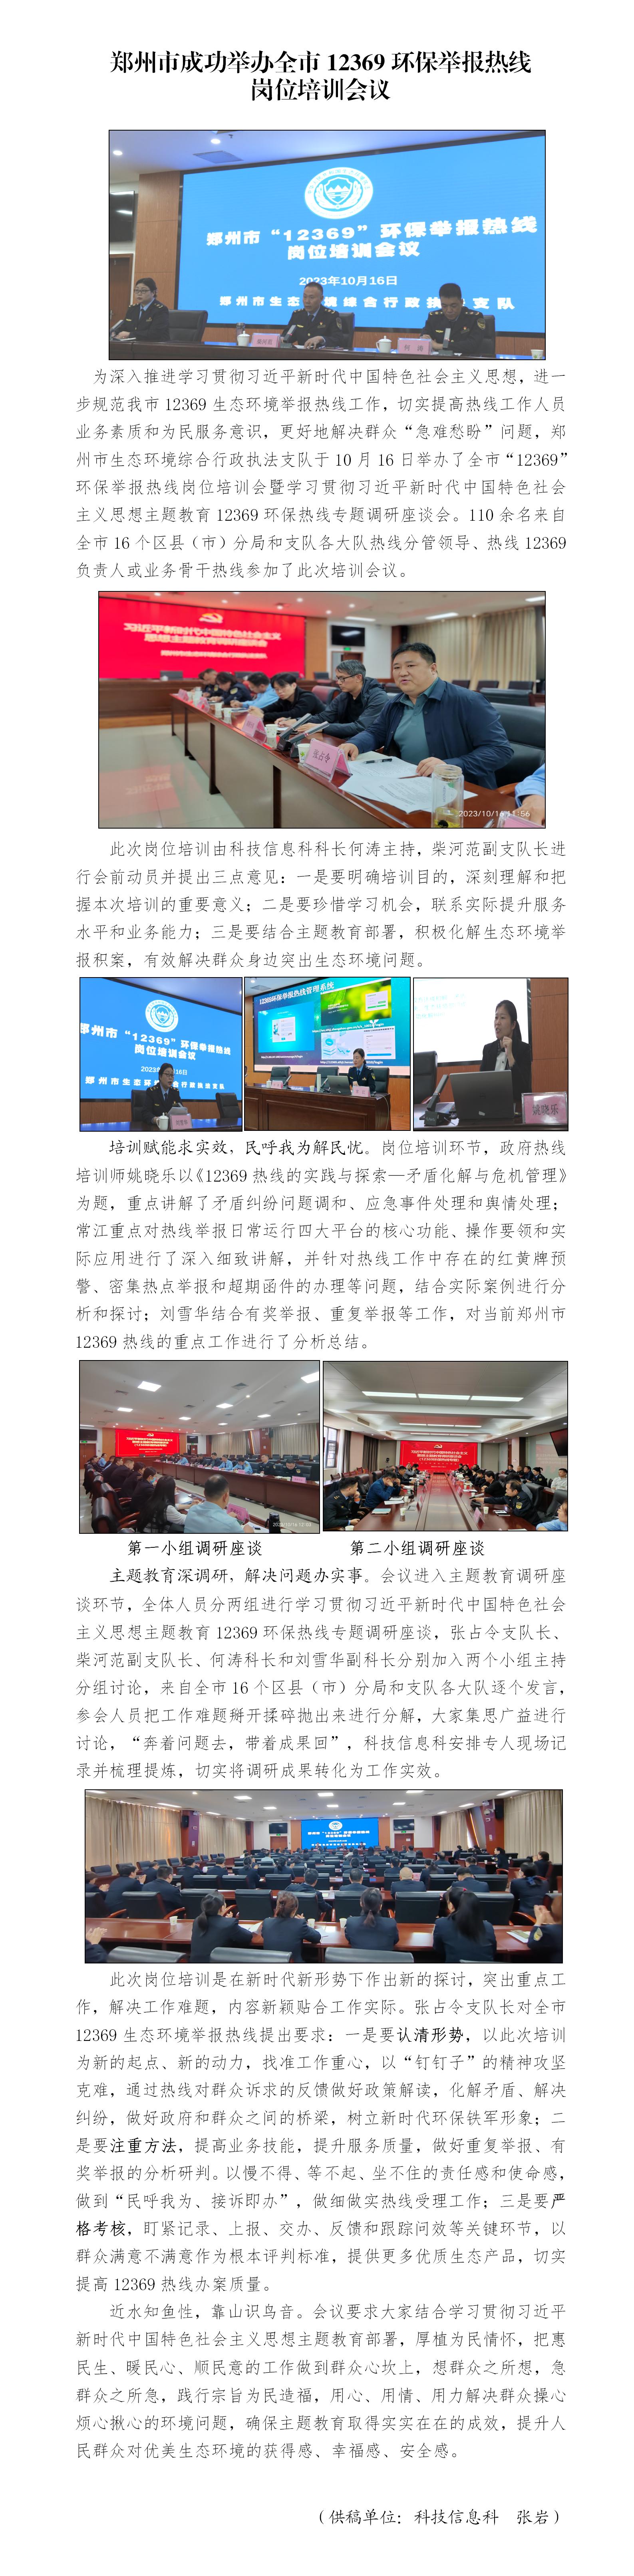 第28期 郑州市成功举办全市12369环保举报热线岗位培训会议8_01.jpg